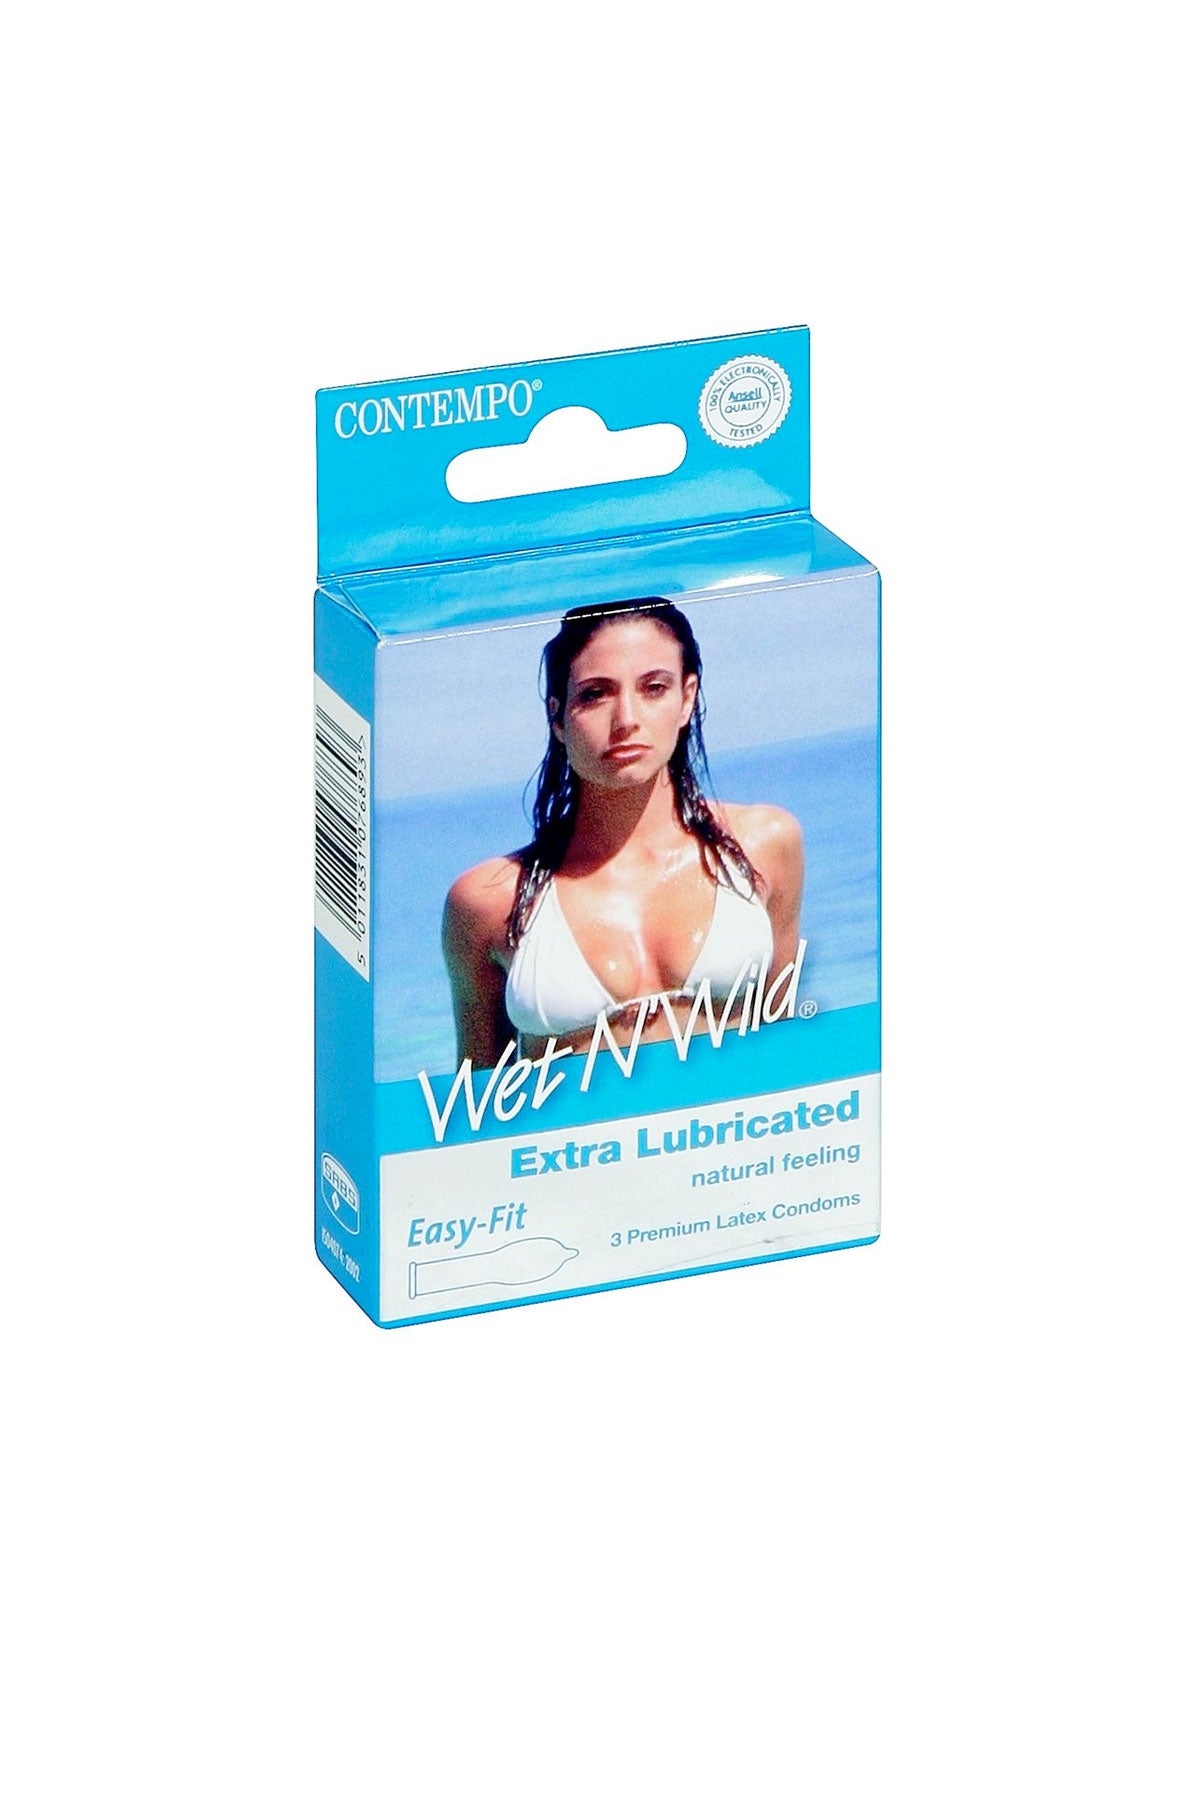 Contempo Wet n Wild Condoms